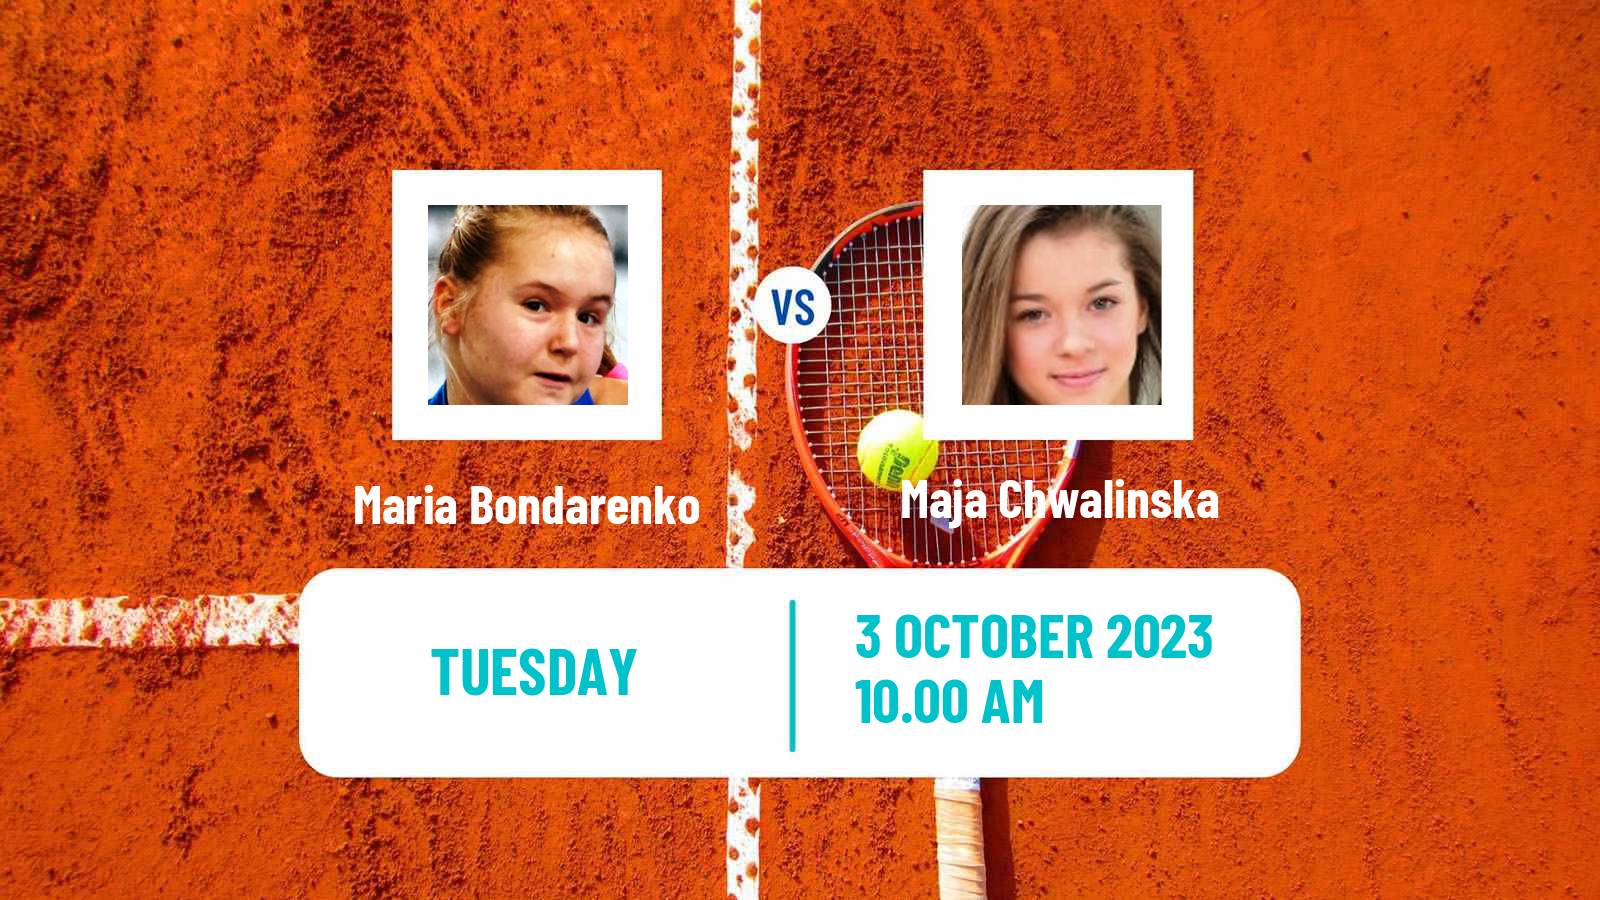 Tennis ITF W25 Baza Women 2023 Maria Bondarenko - Maja Chwalinska